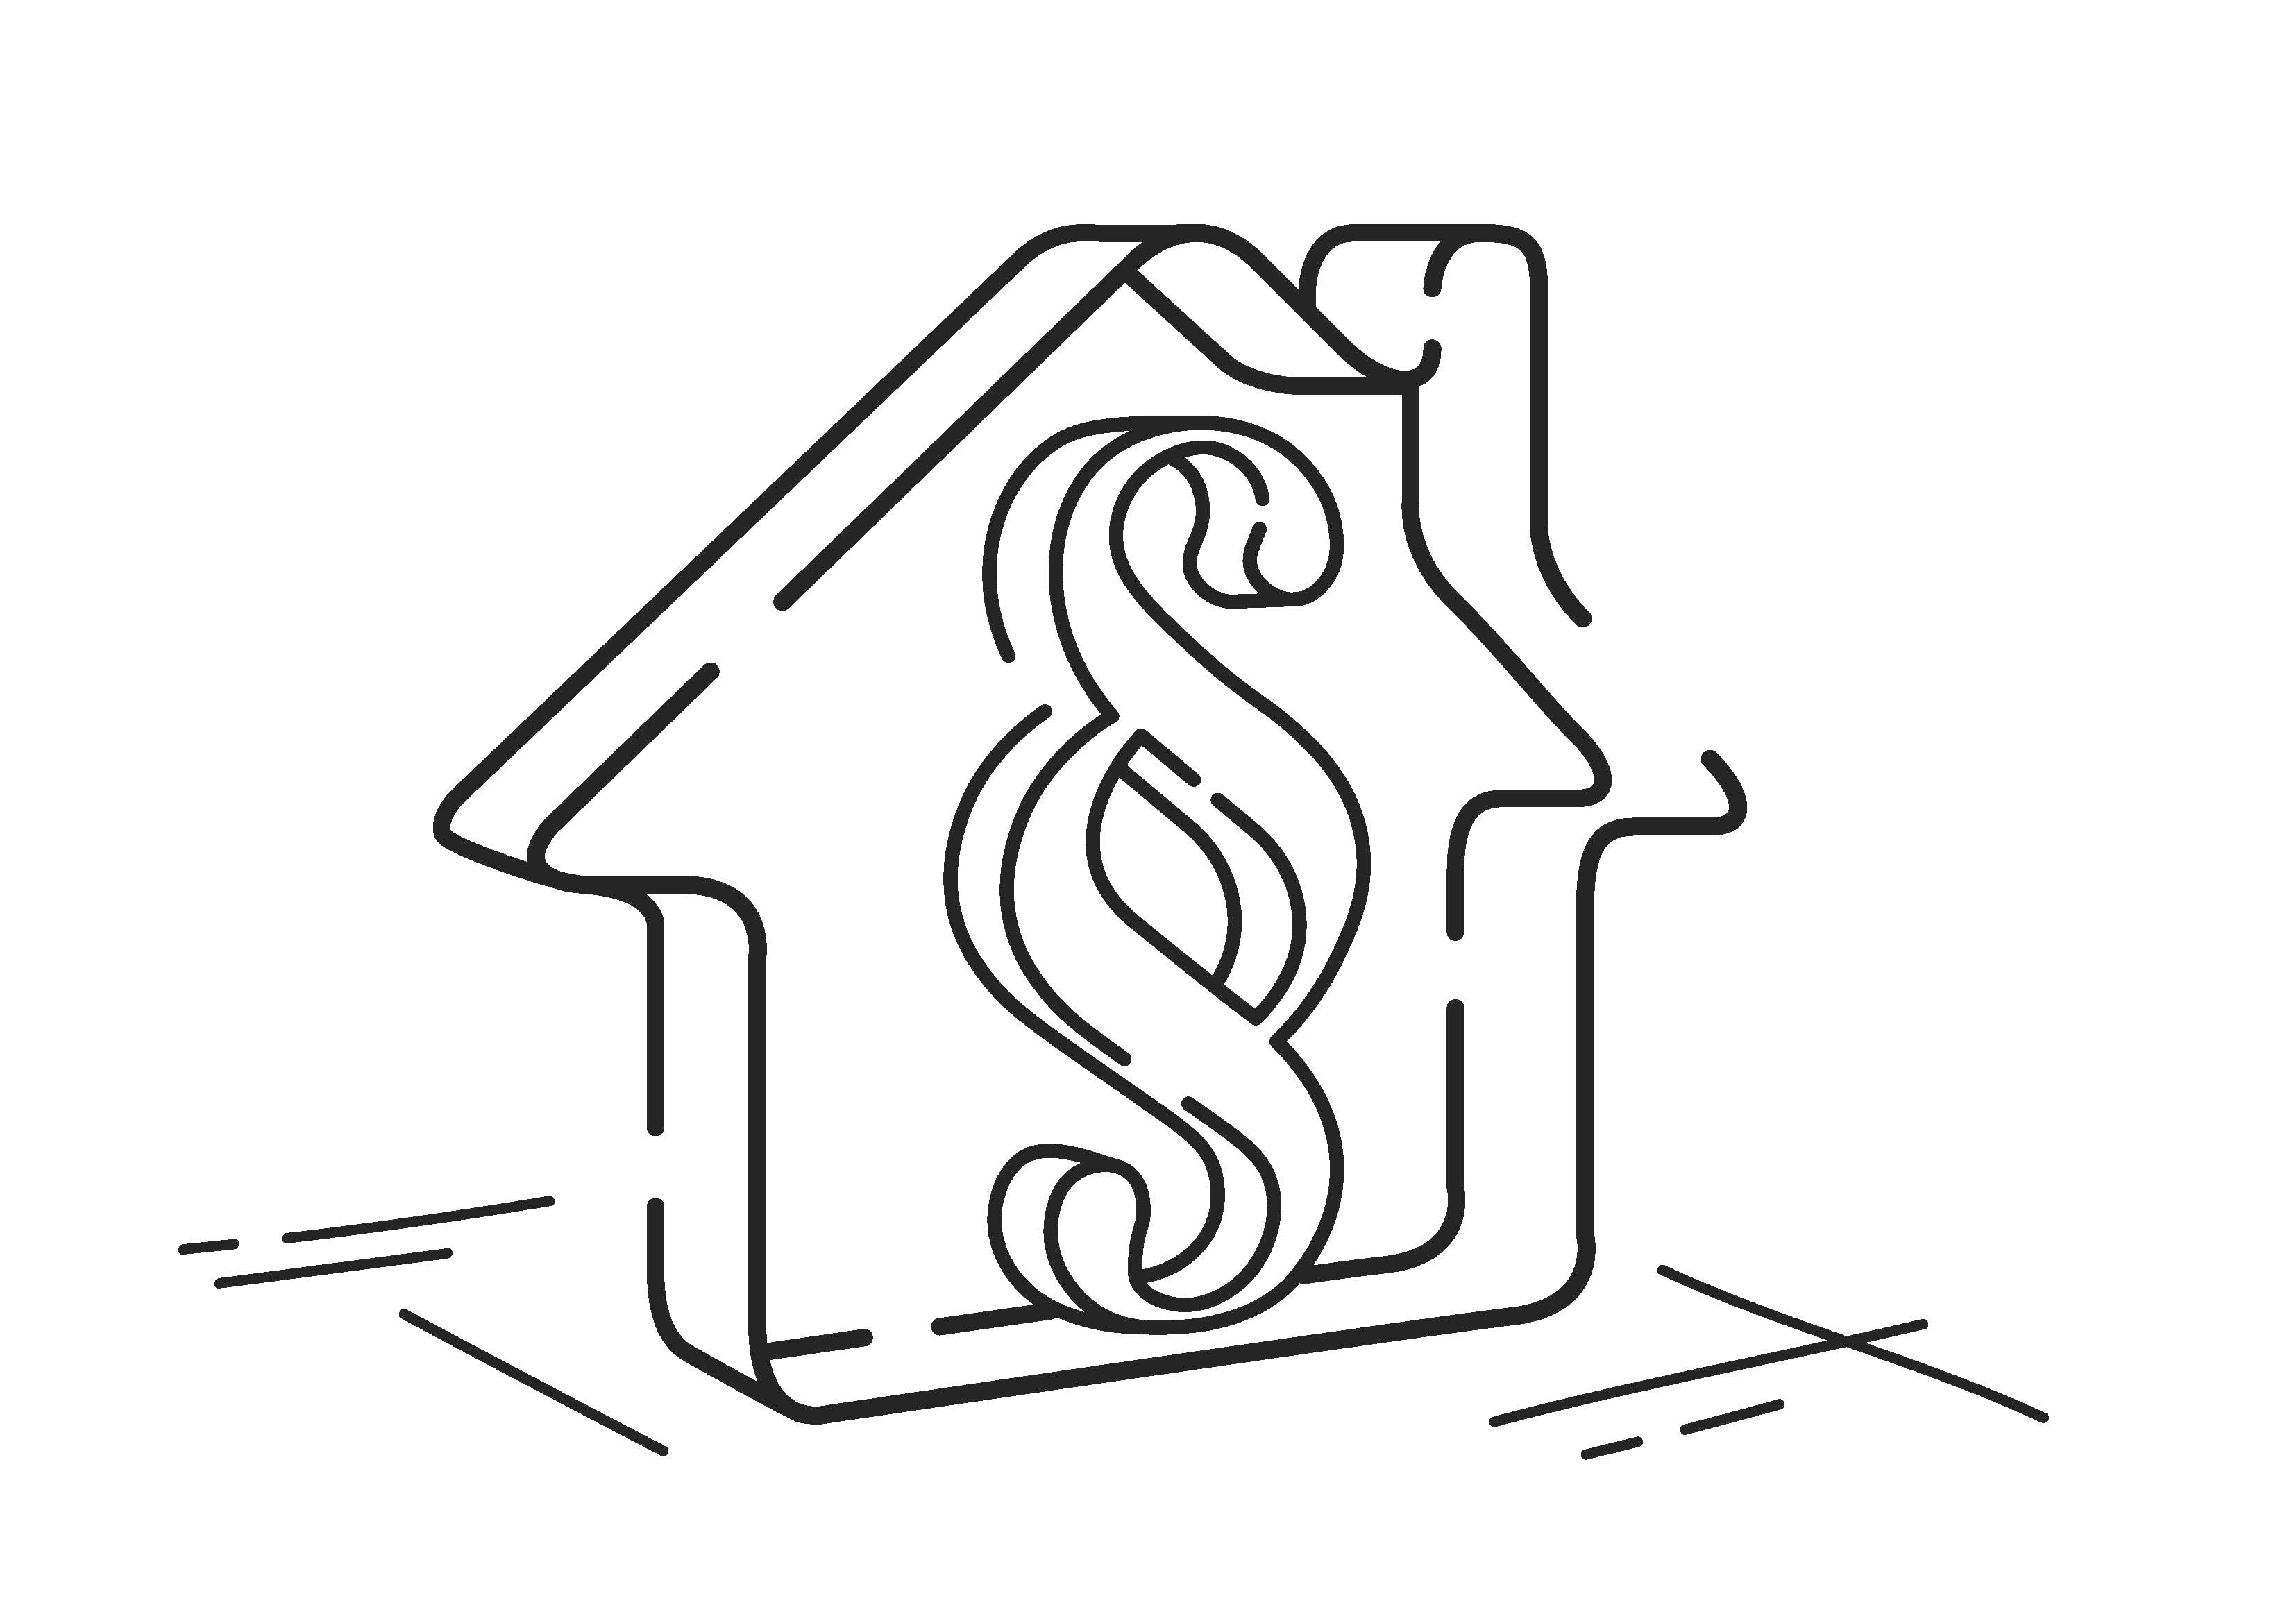 Immobilie verkaufen ohne Makler - Deutsche Wertermittlungsrichtlinien